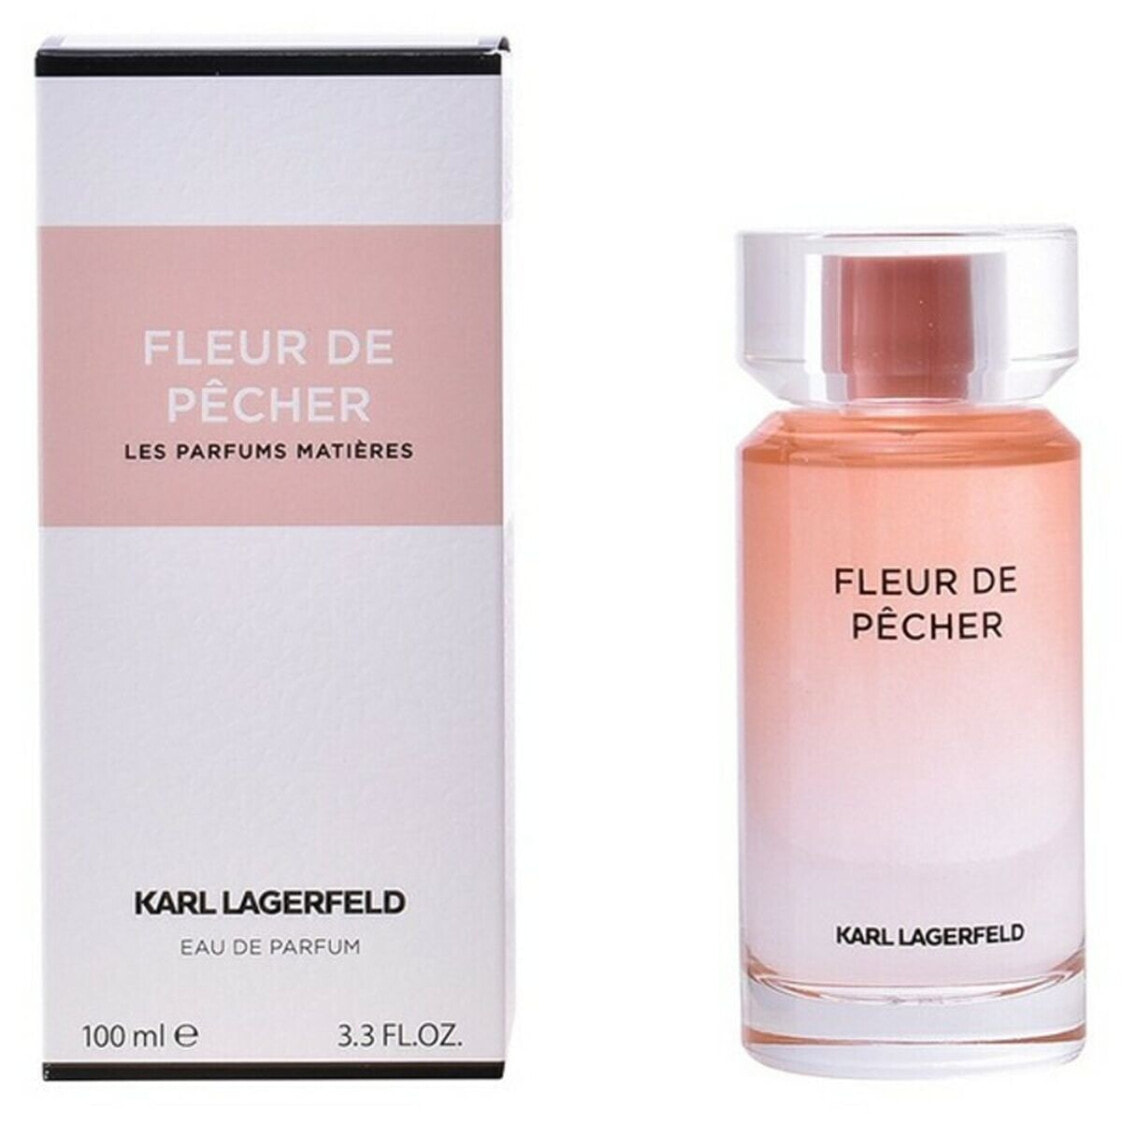 Флер де парфюм. Karl Lagerfeld fleur pecher парфюмерная вода 100 мл.